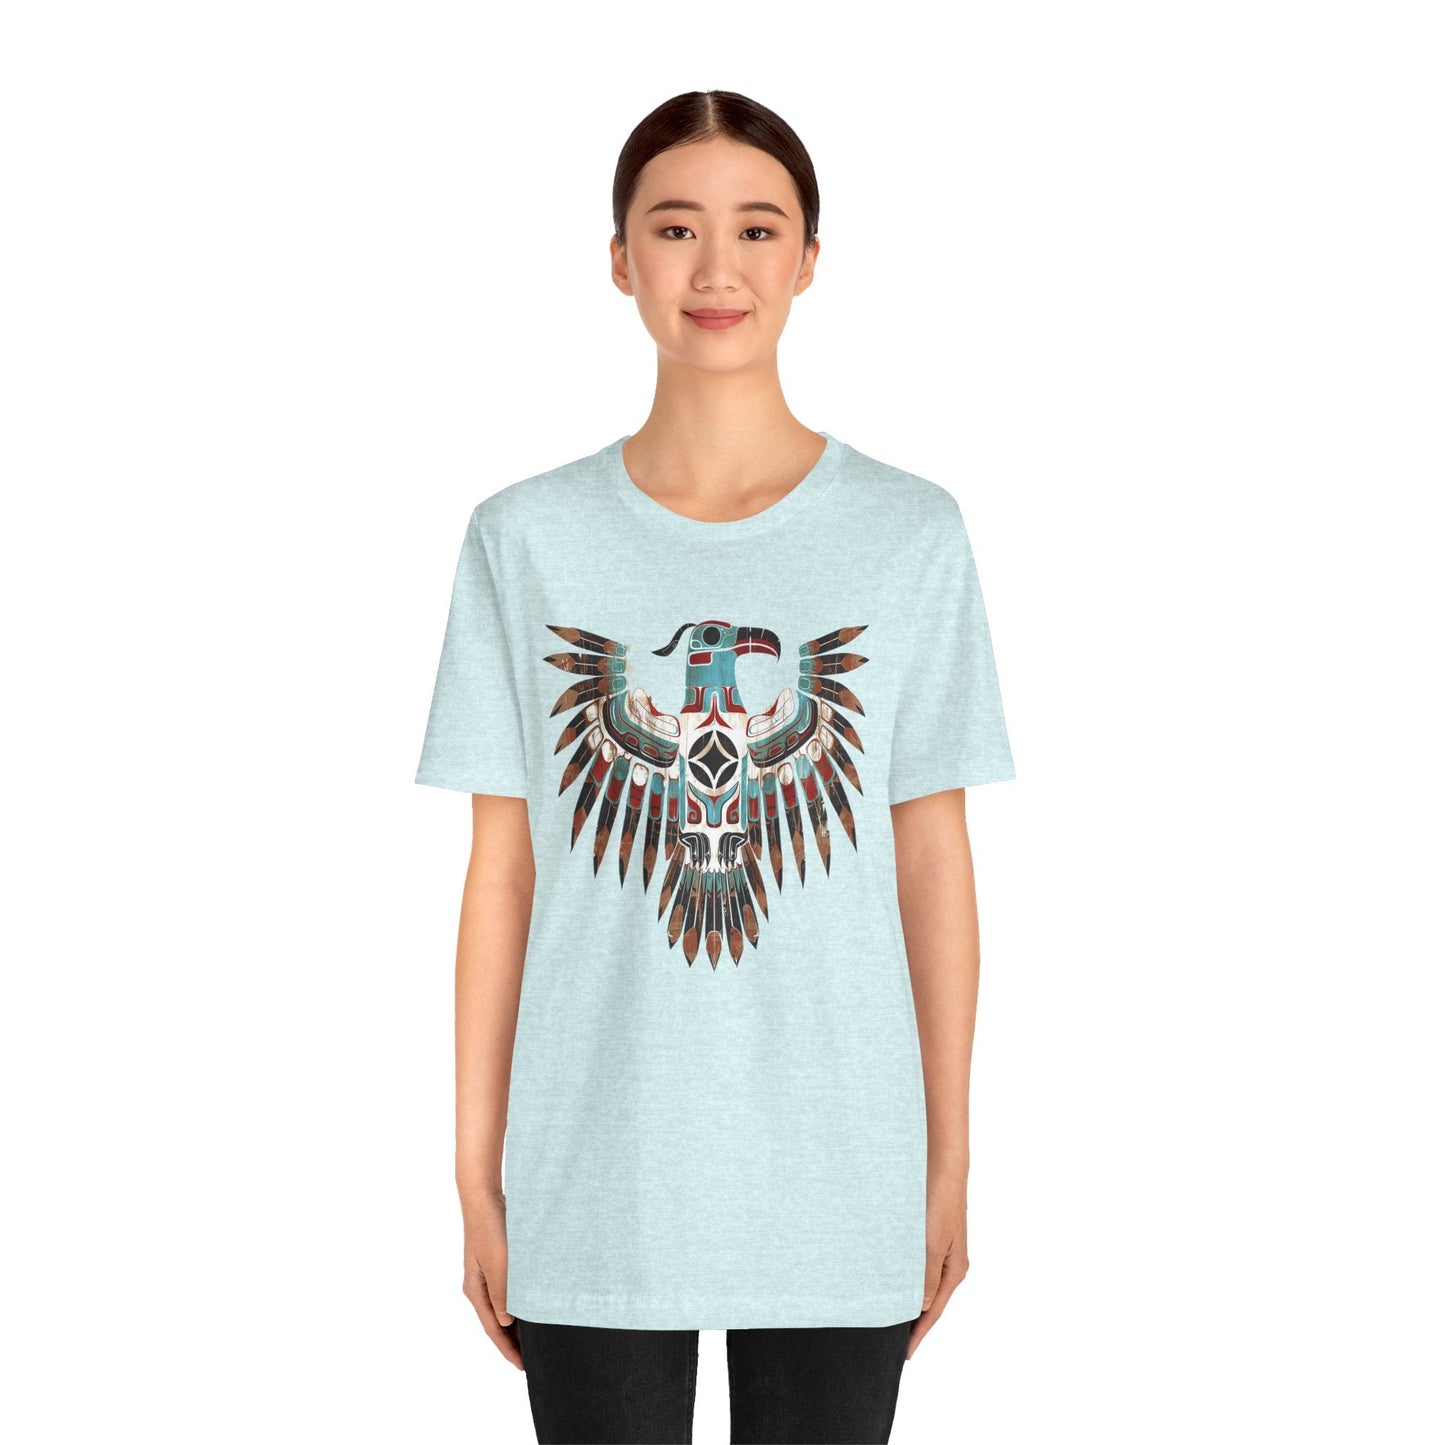 Native American Shirt, Thunderbird Art Shirt, Indigenous Art, Boho Spirt Guide Shirt - FlooredByArt